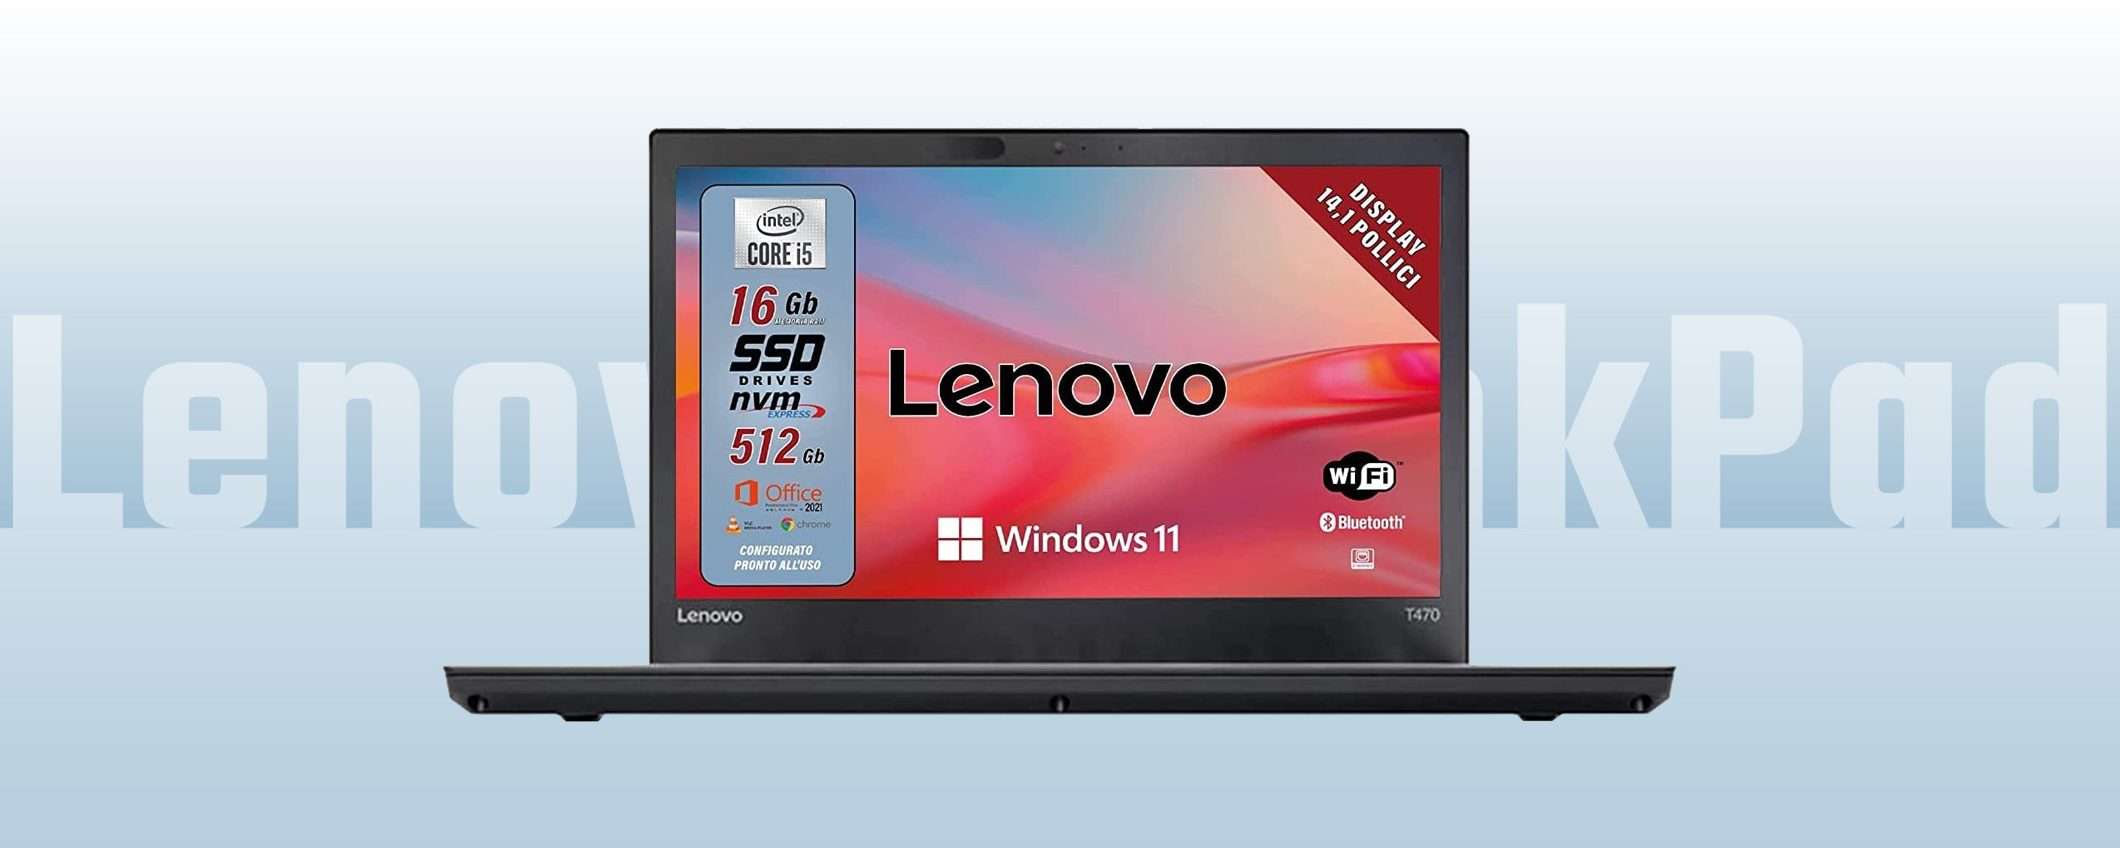 Lenovo ThinkPad T: notebook W11 Pro a soli 295 euro